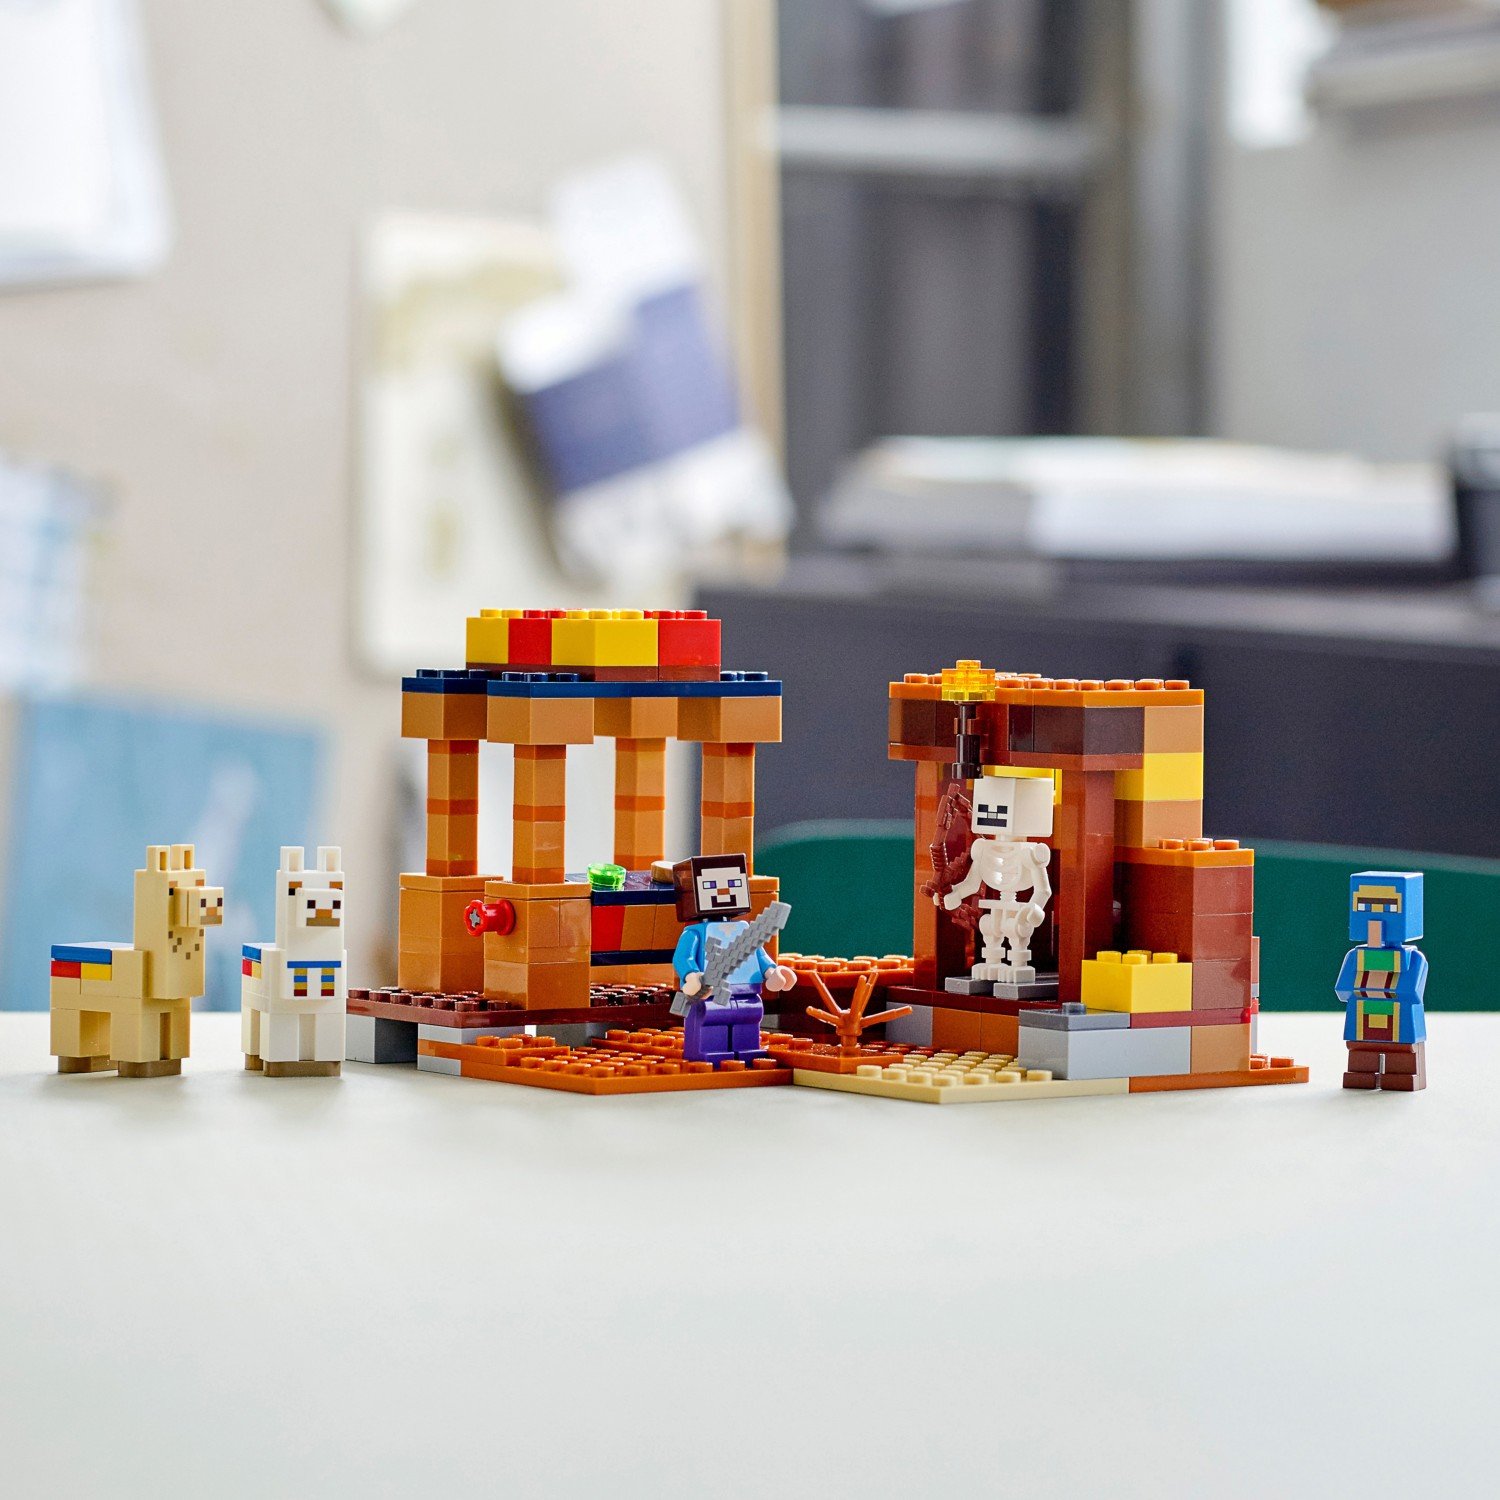 Конструктор LEGO Minecraft 21167 Торговый пост